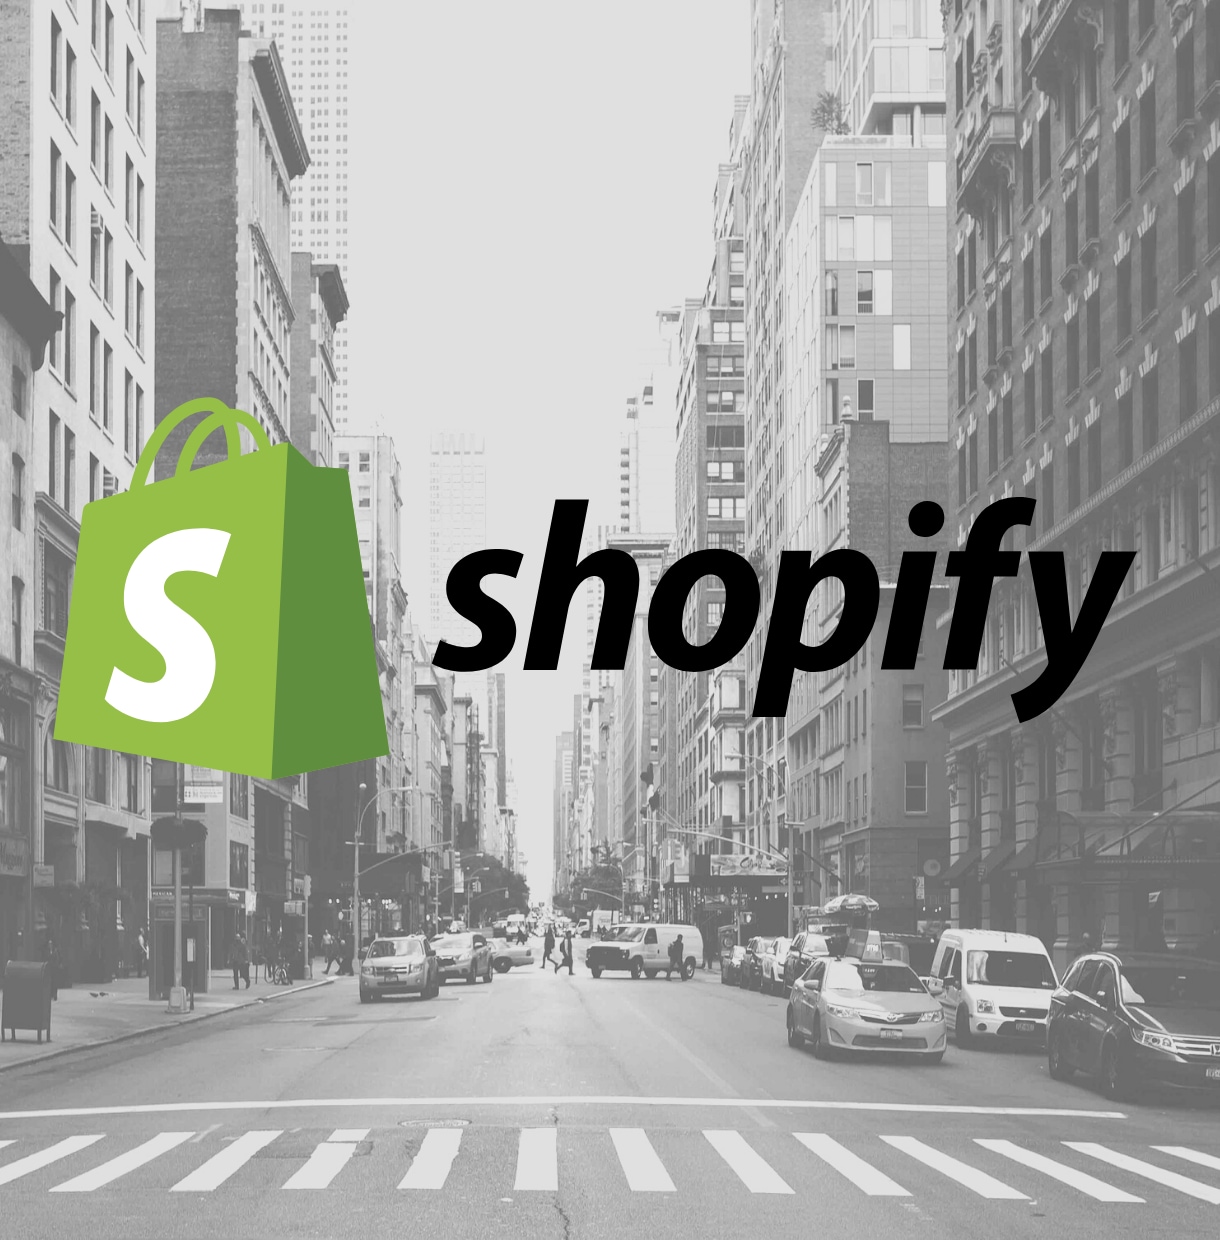 ShopifyでECサイト構築します 高度なスキルで運用しやすいECサイト作ります。 イメージ1